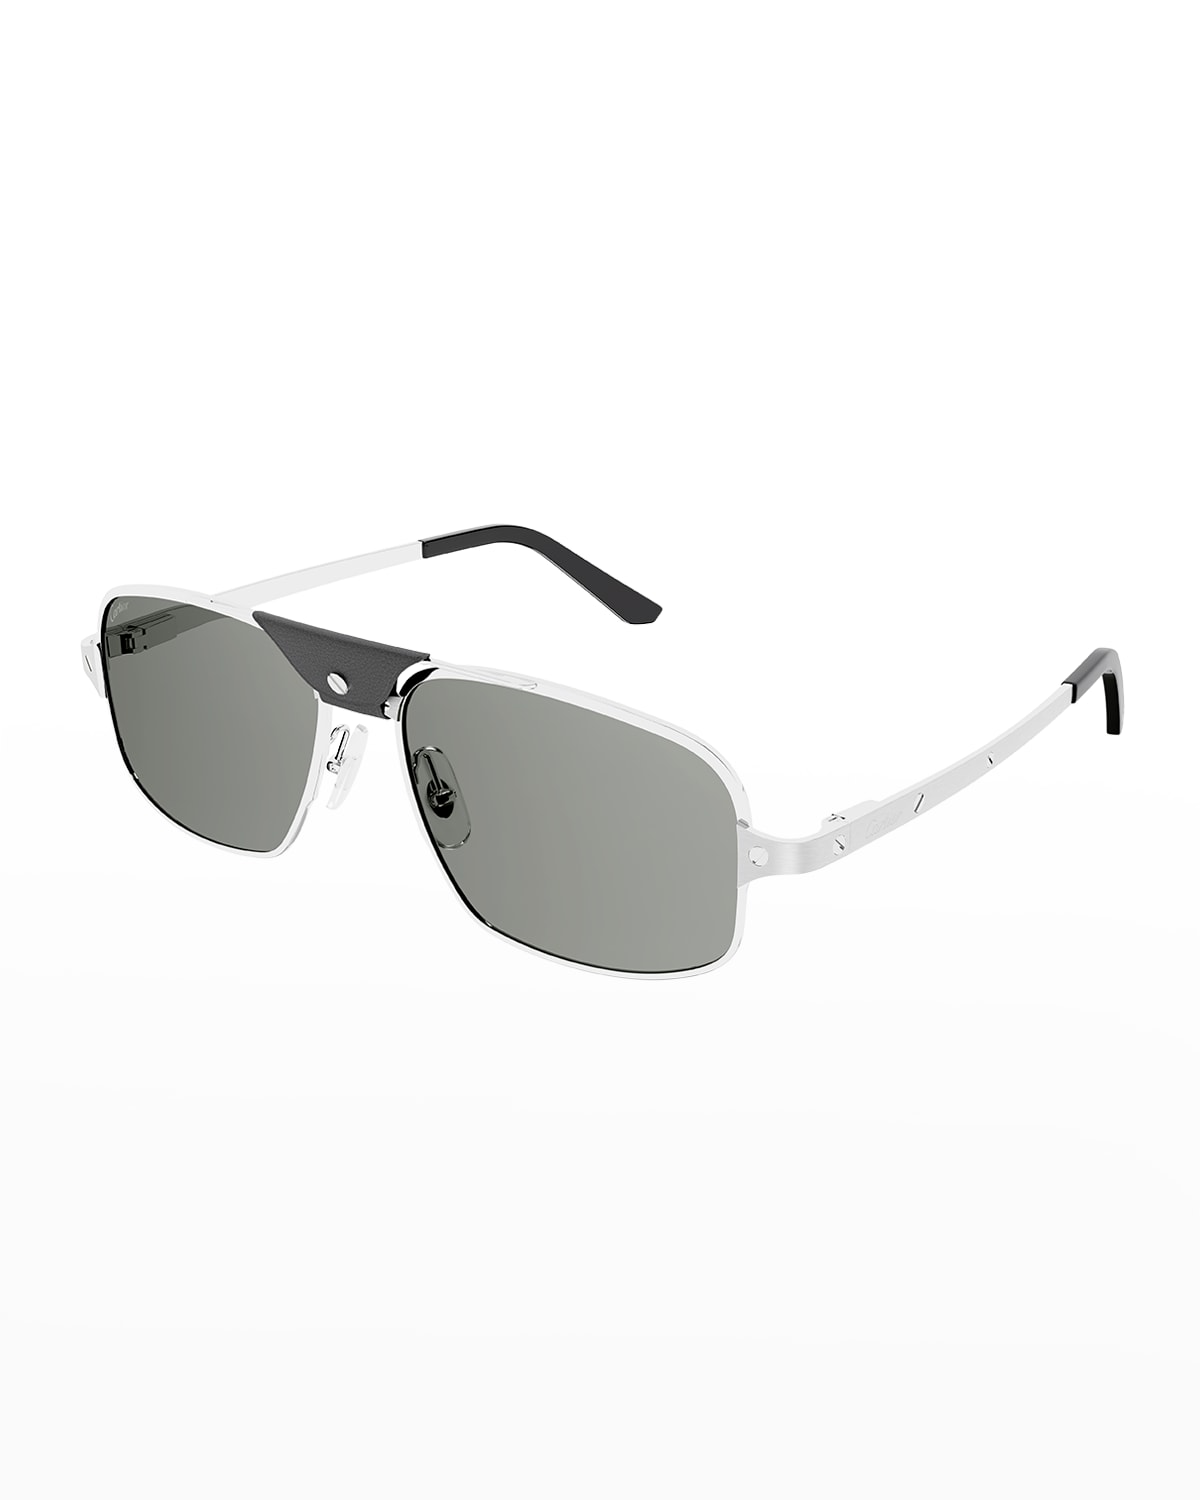 Men's Metal Aviator Sunglasses